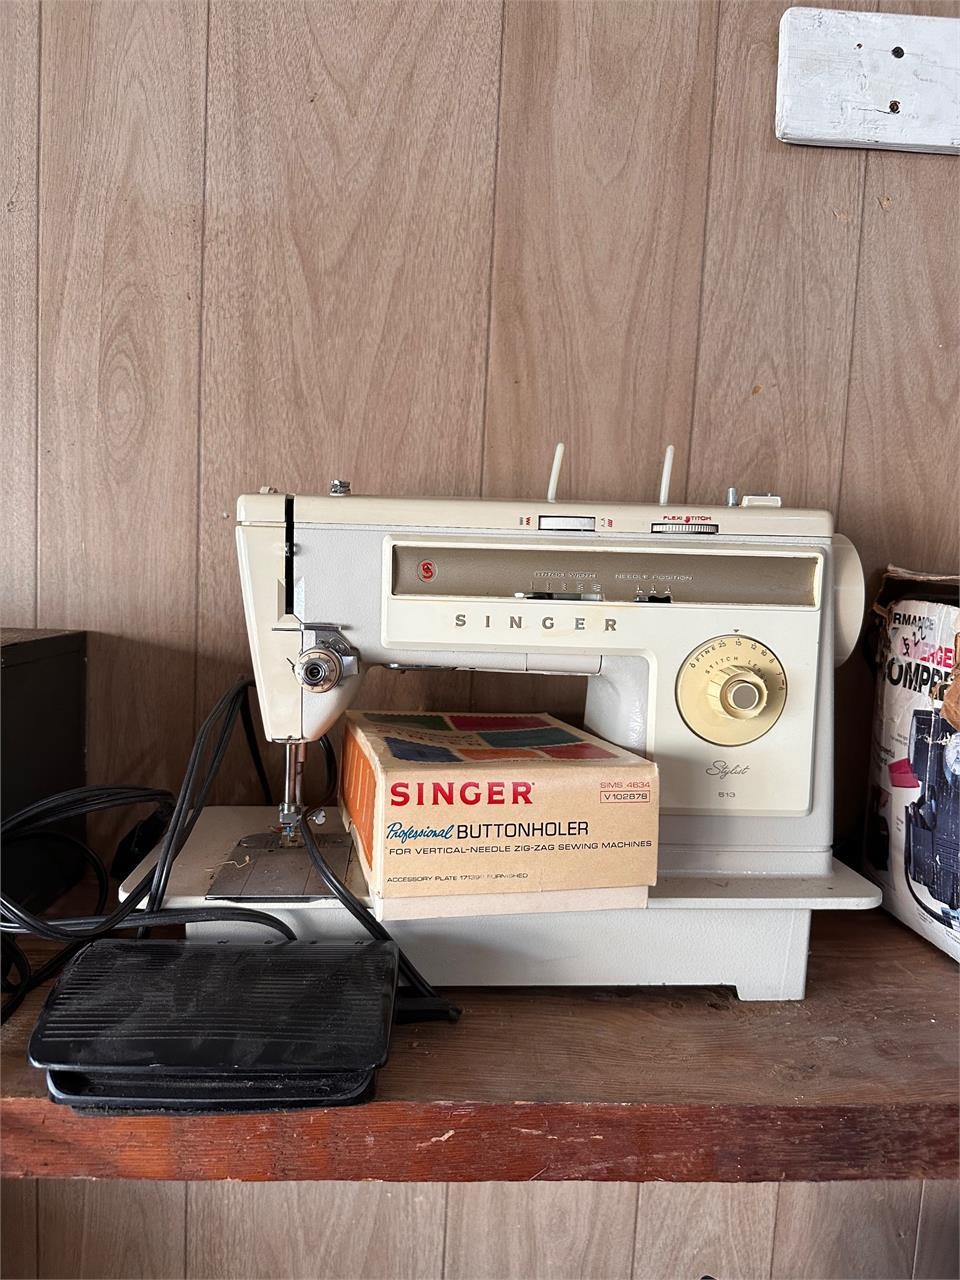 Singer Stylist 513 sewing machine